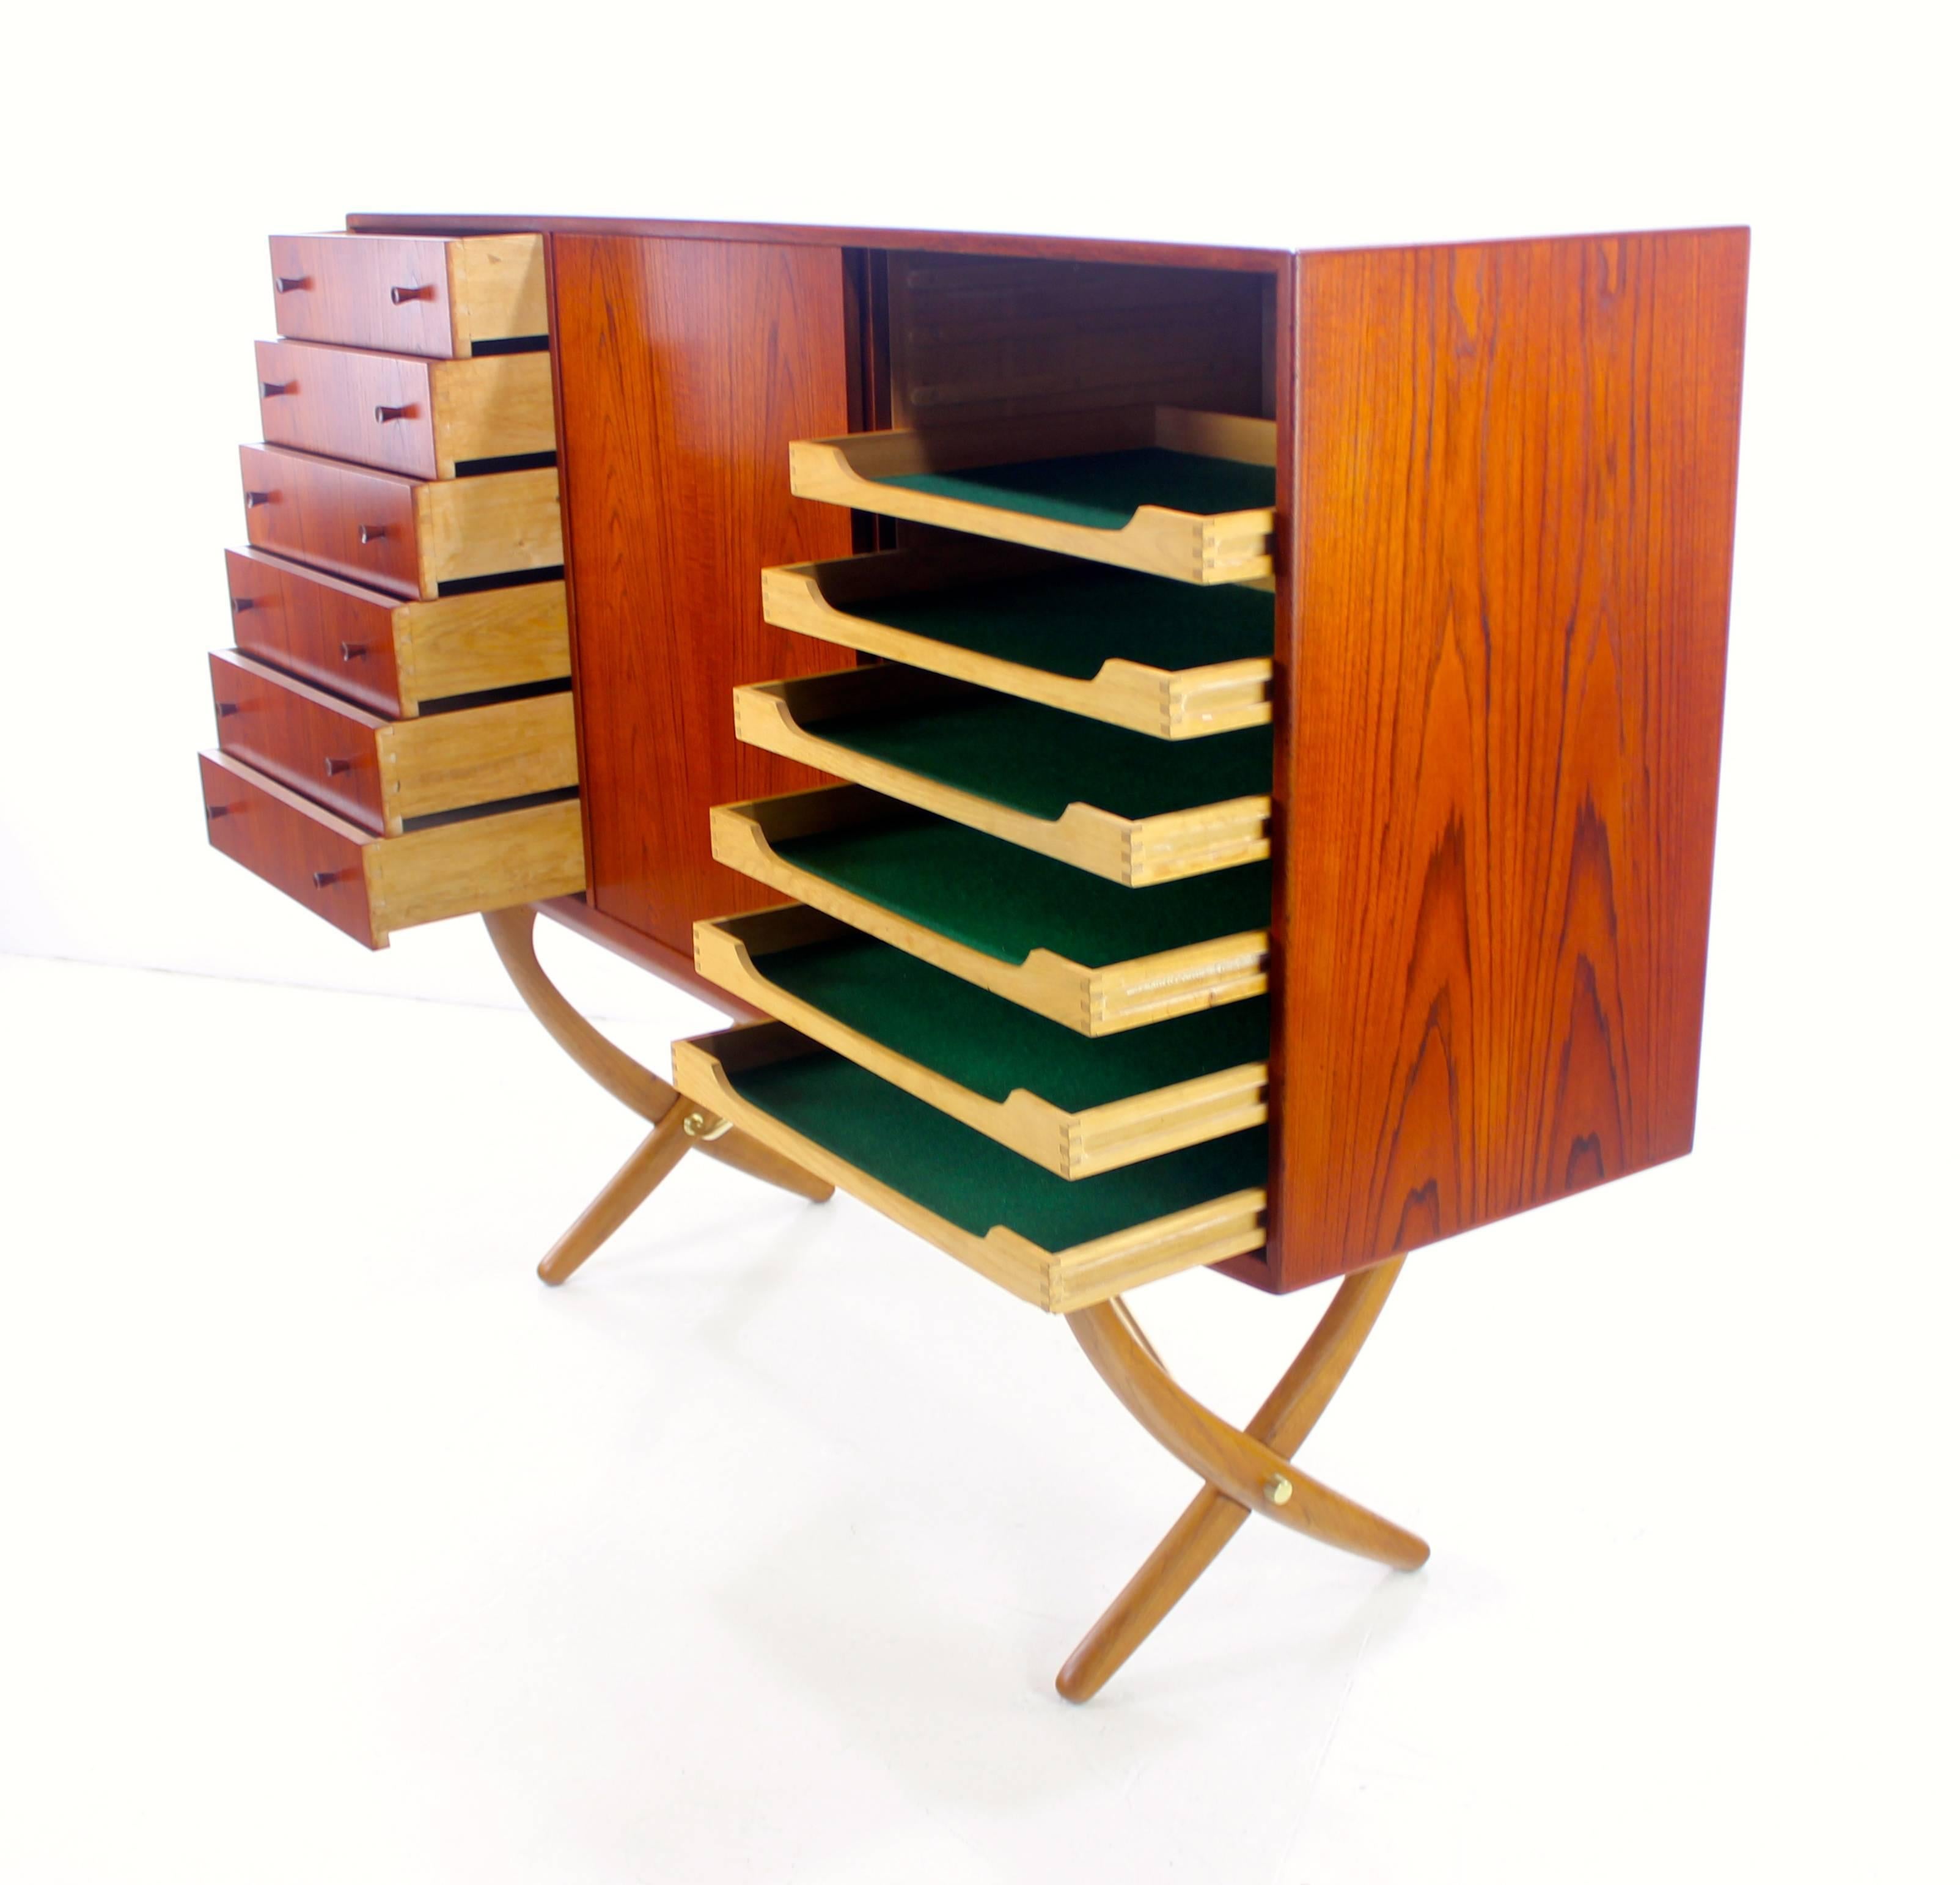 Distinctive Danish Modern Teak and Oak Credenza Designed by Hans Wegner For Sale 1